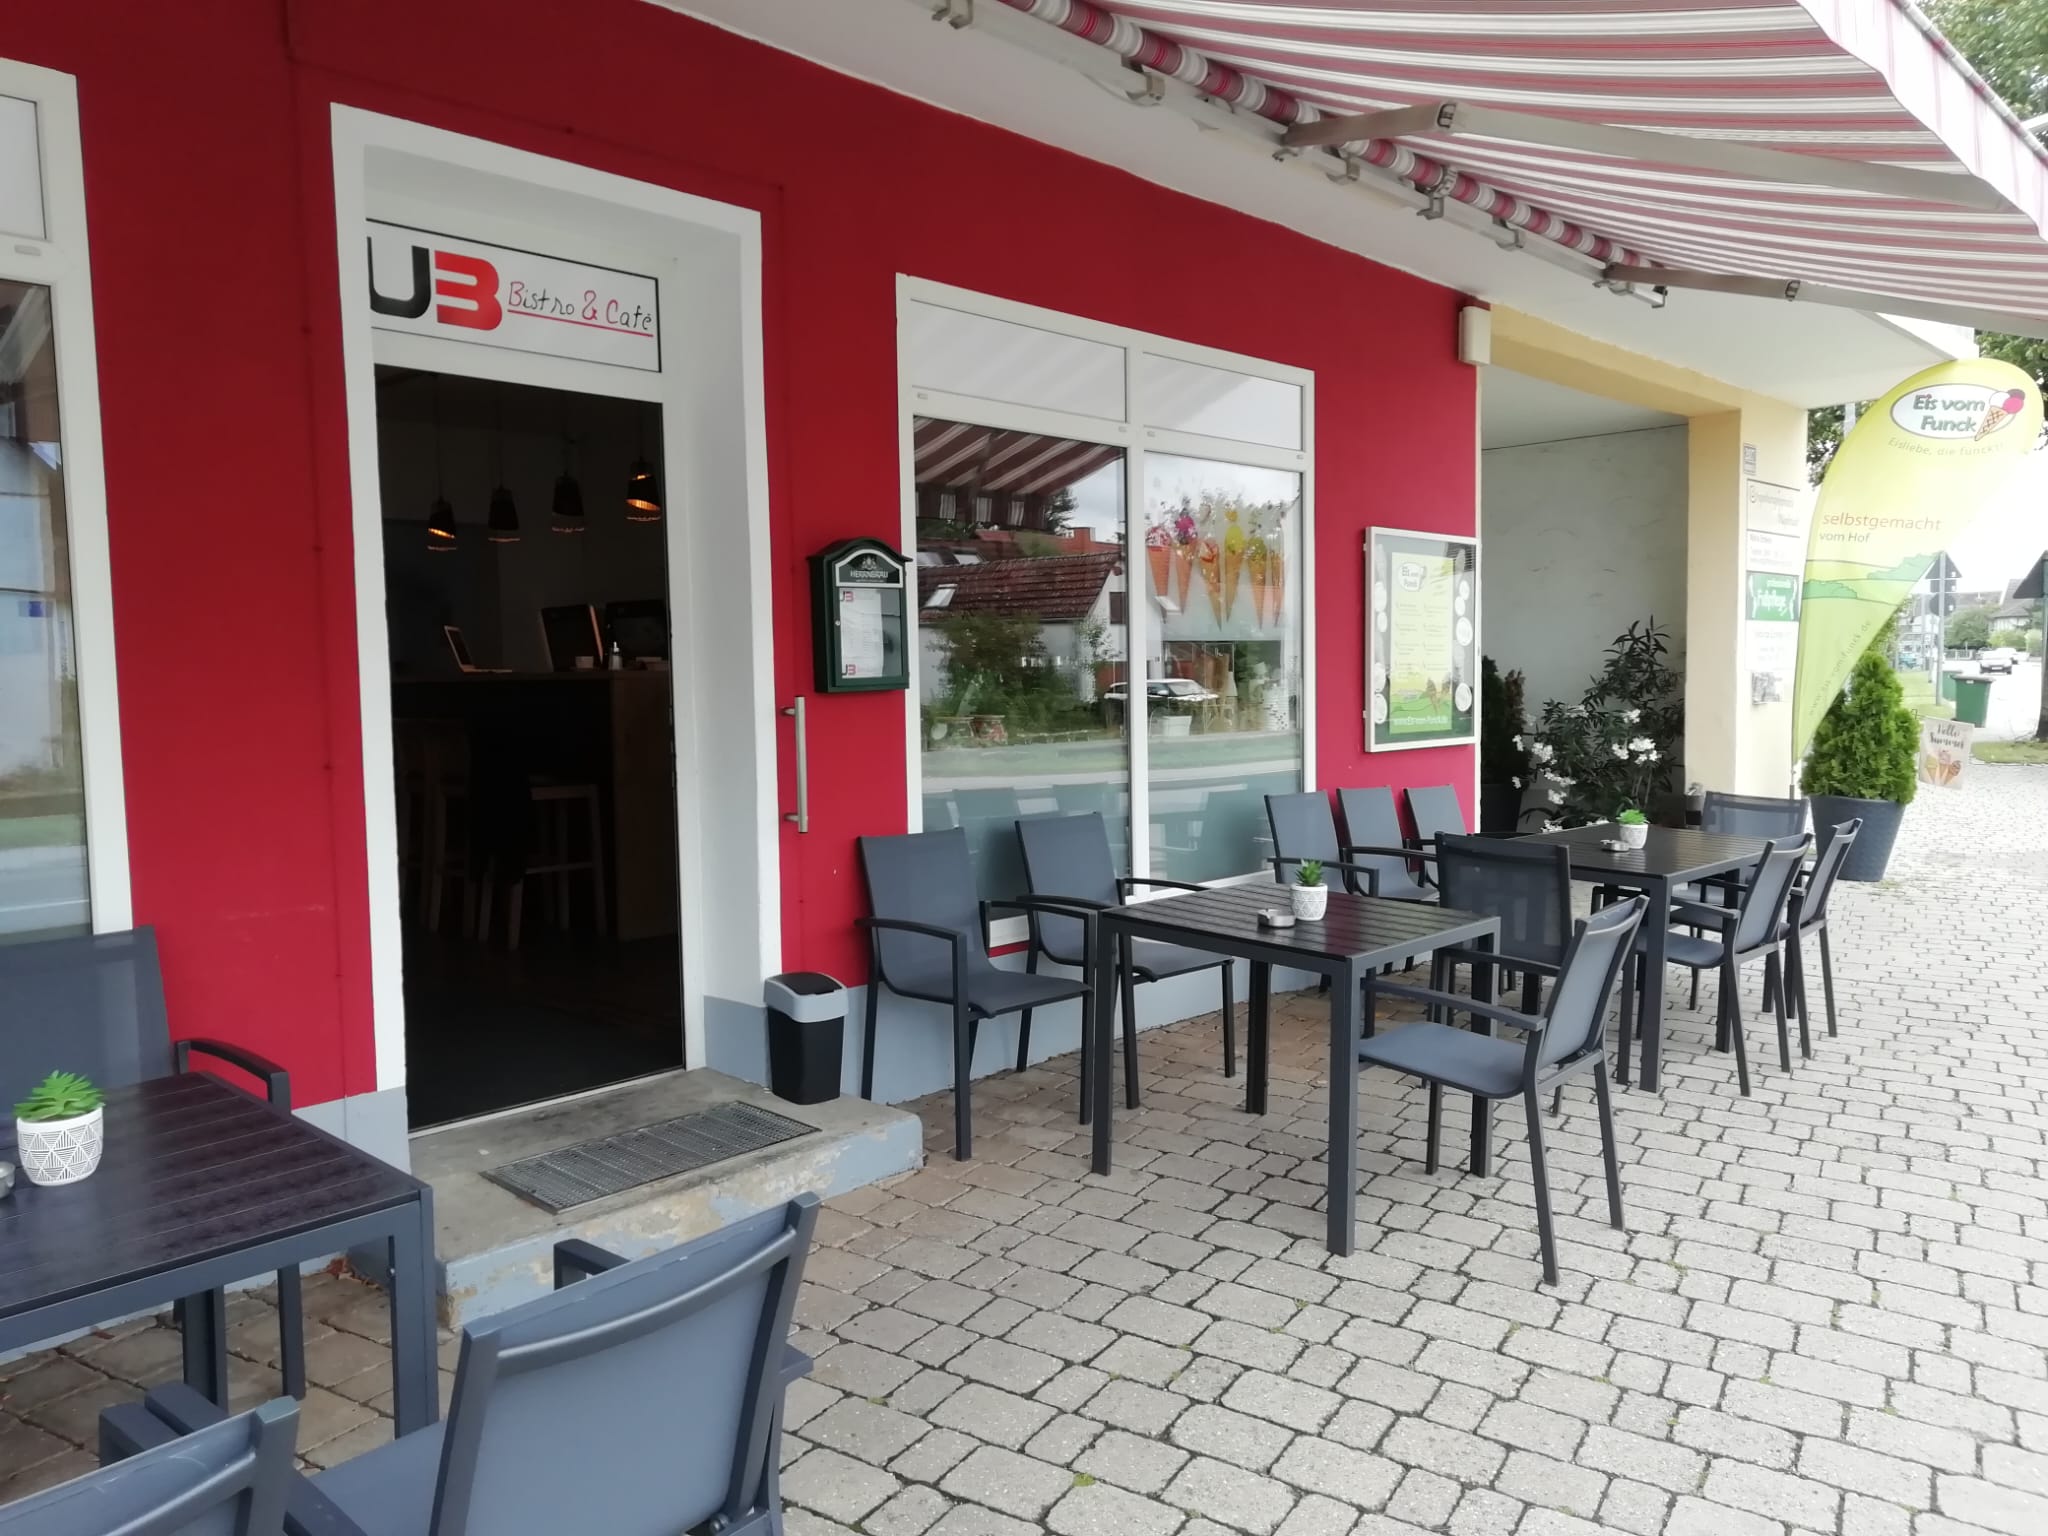 U3 Bistro & Café